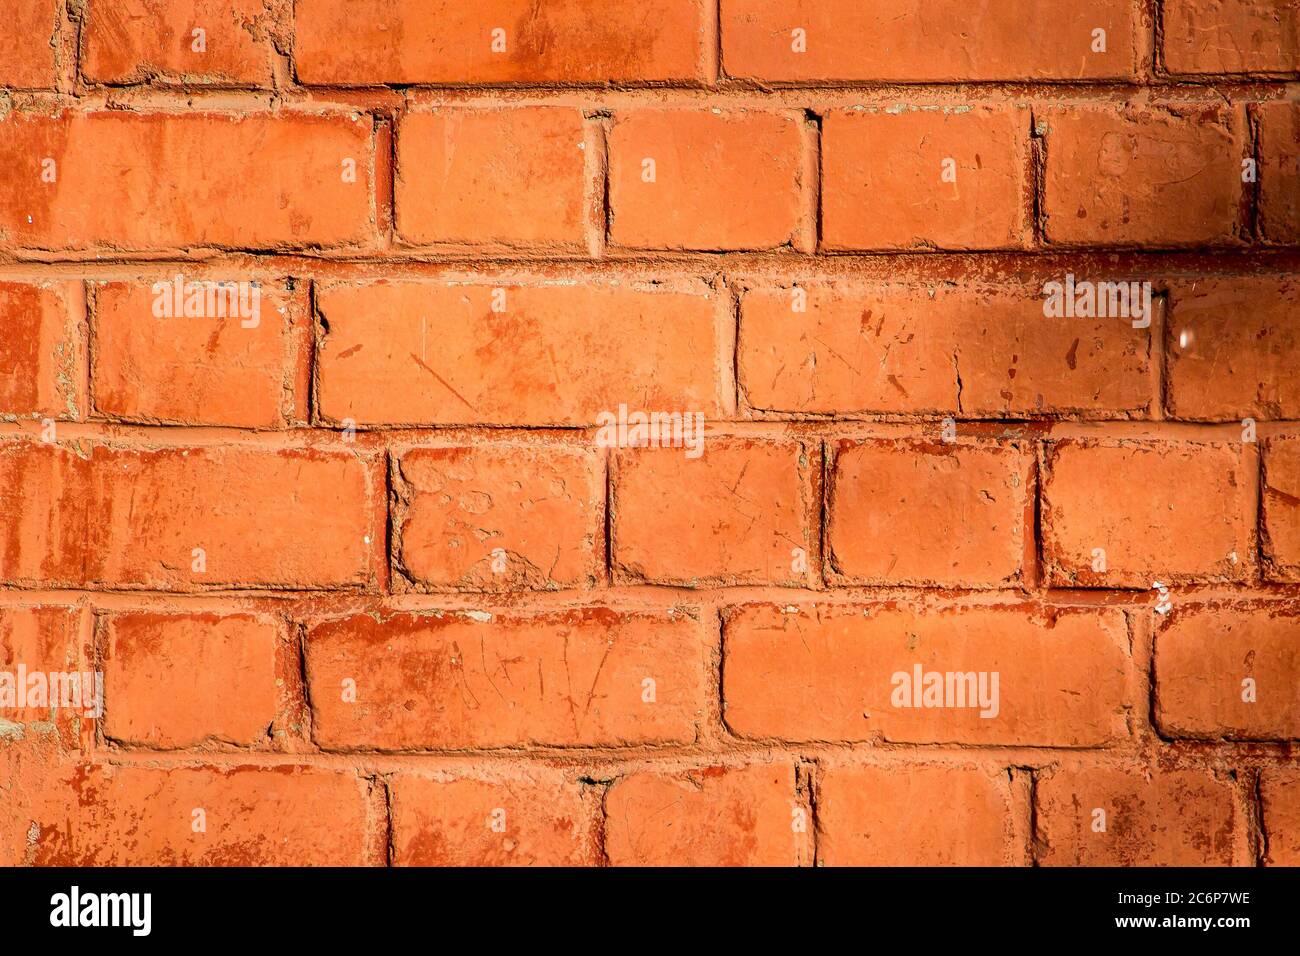 Mur en brique orange, texture pour le design Banque D'Images